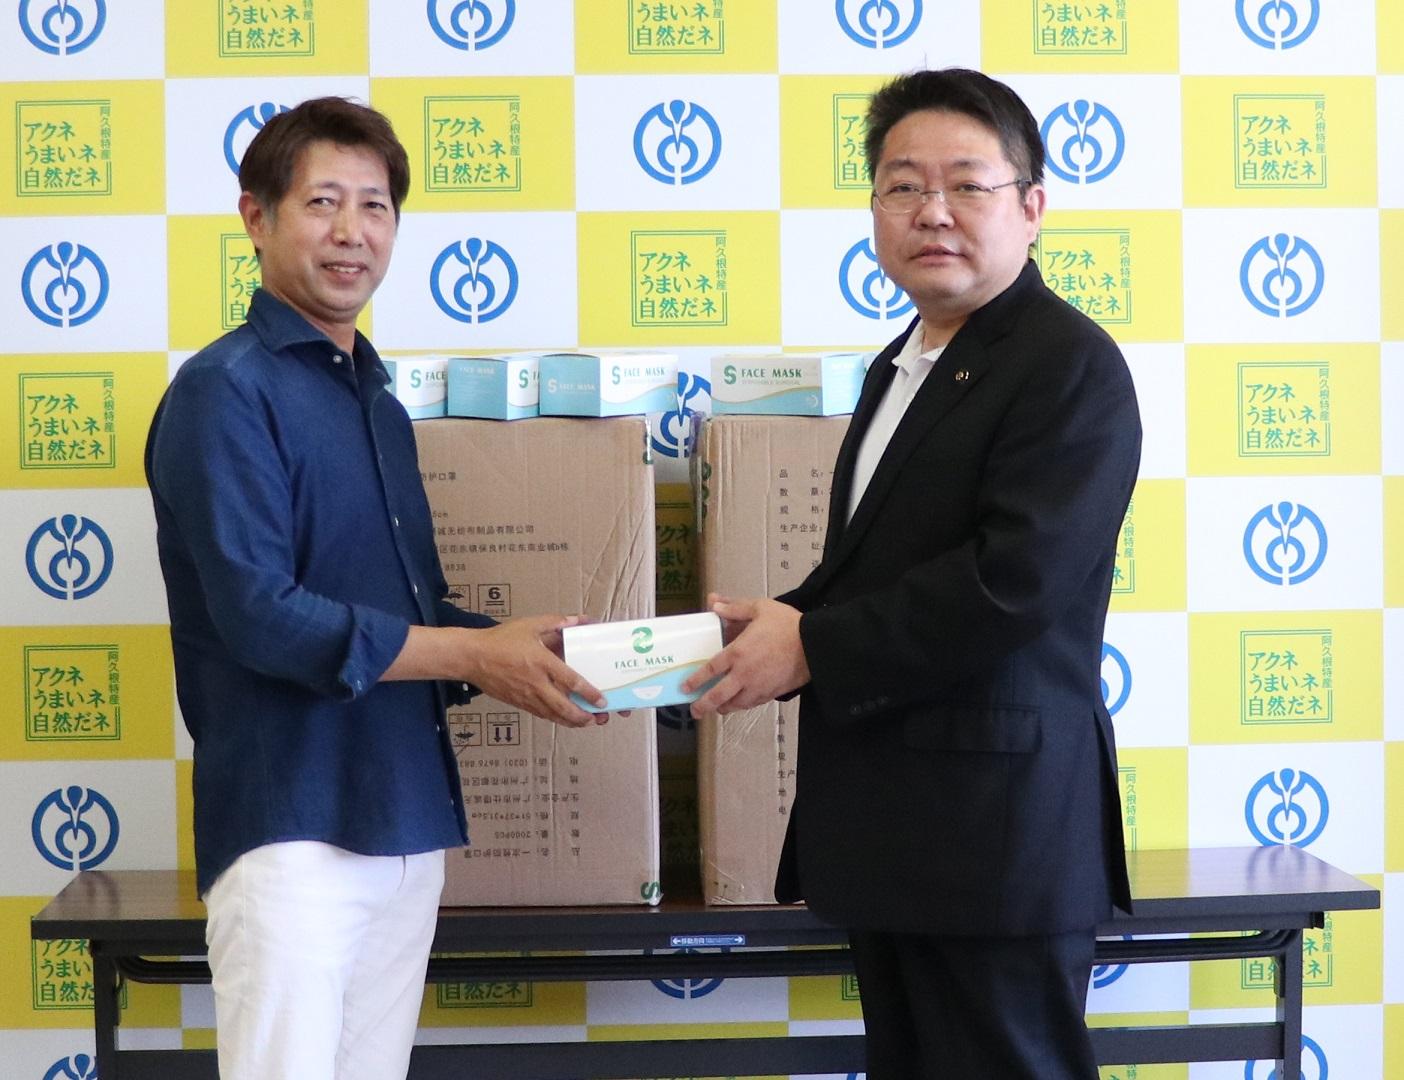 ルット株式会社代表取締役塩屋安宣さんと西平市長の写真